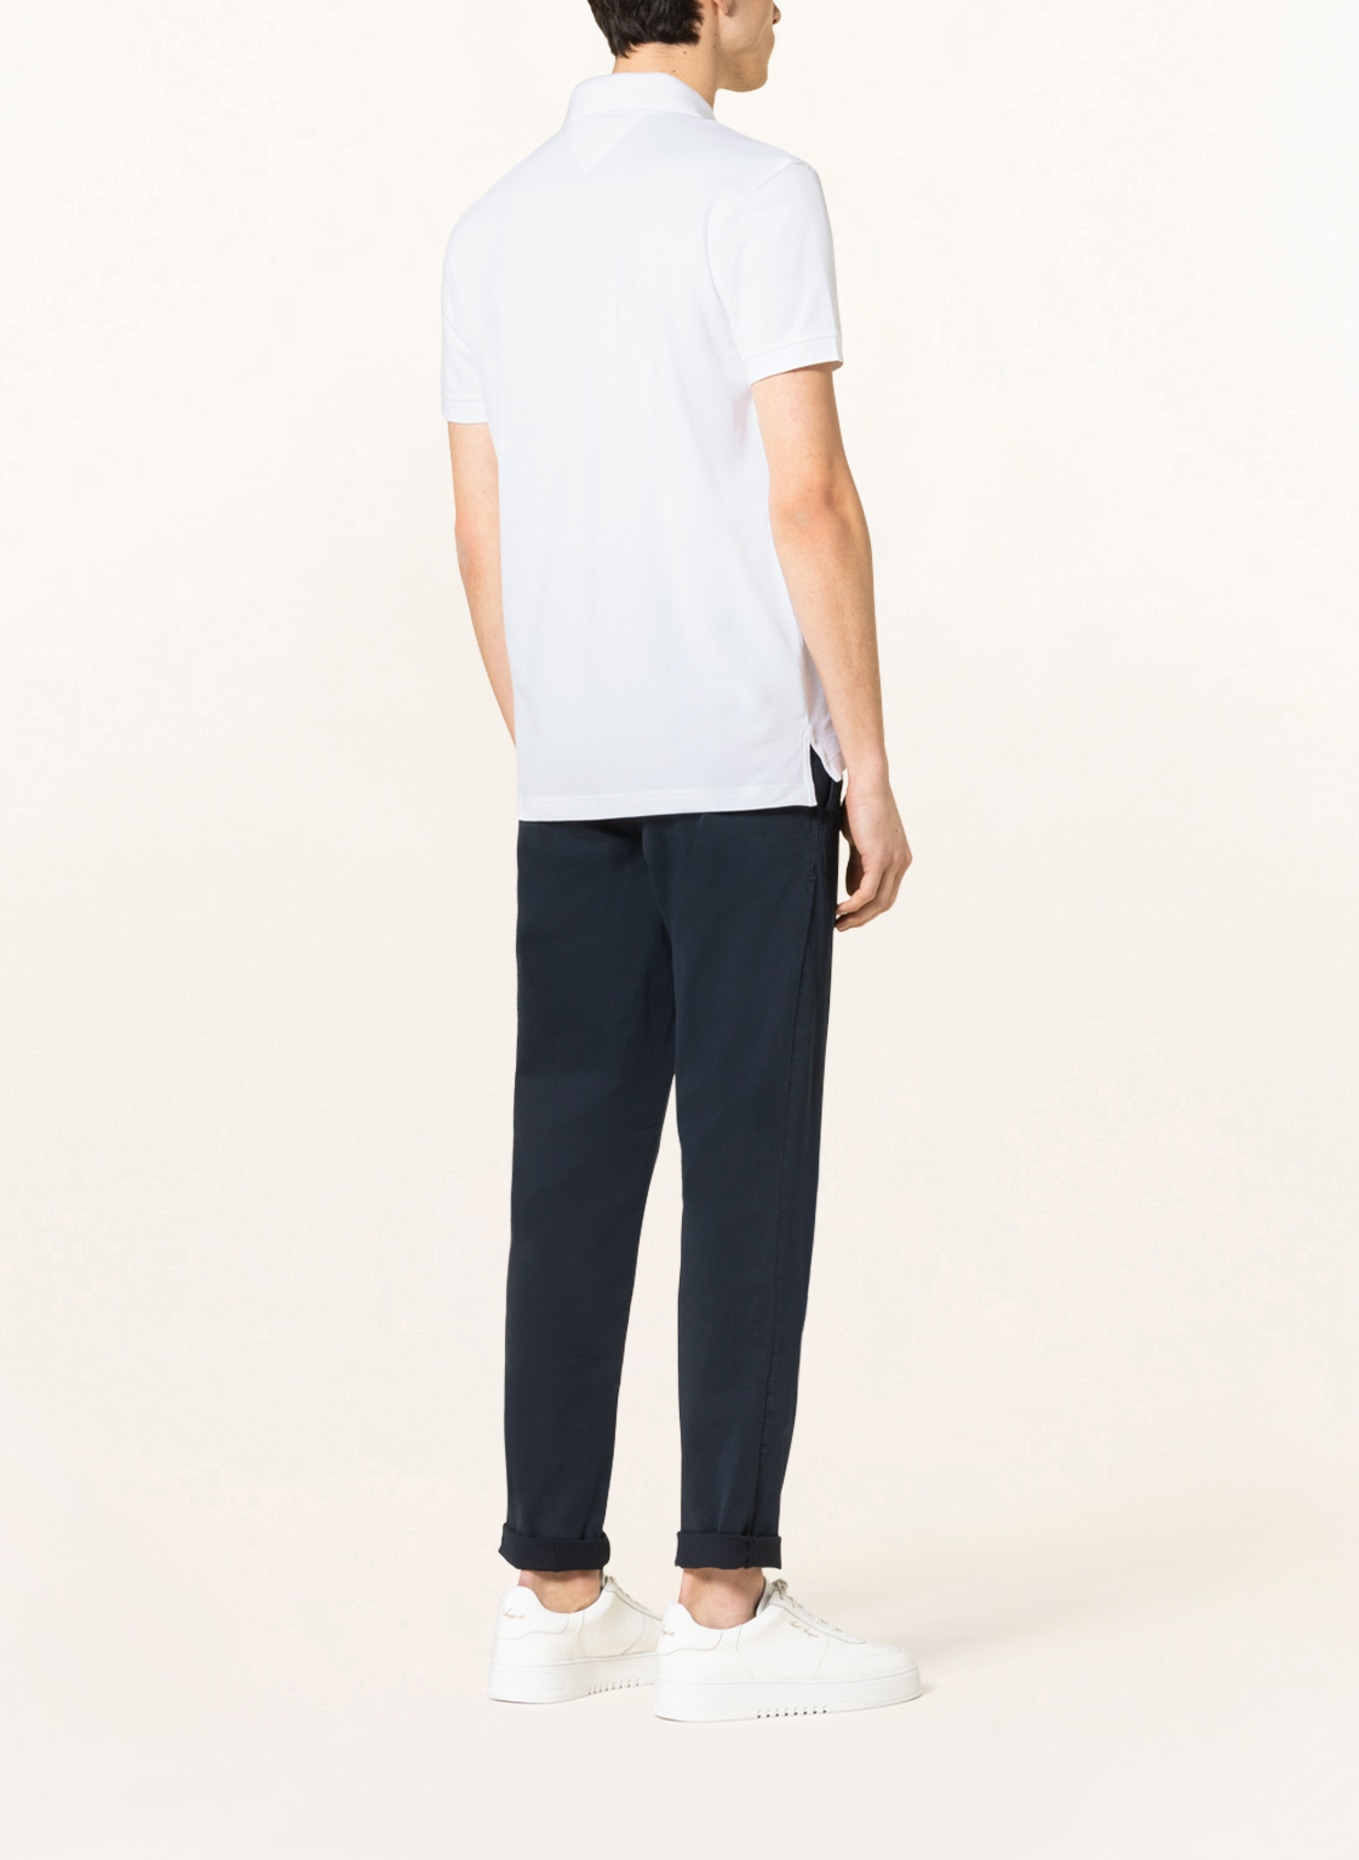 TOMMY HILFIGER Piqué-Poloshirt Regular Fit, Farbe: WEISS (Bild 3)